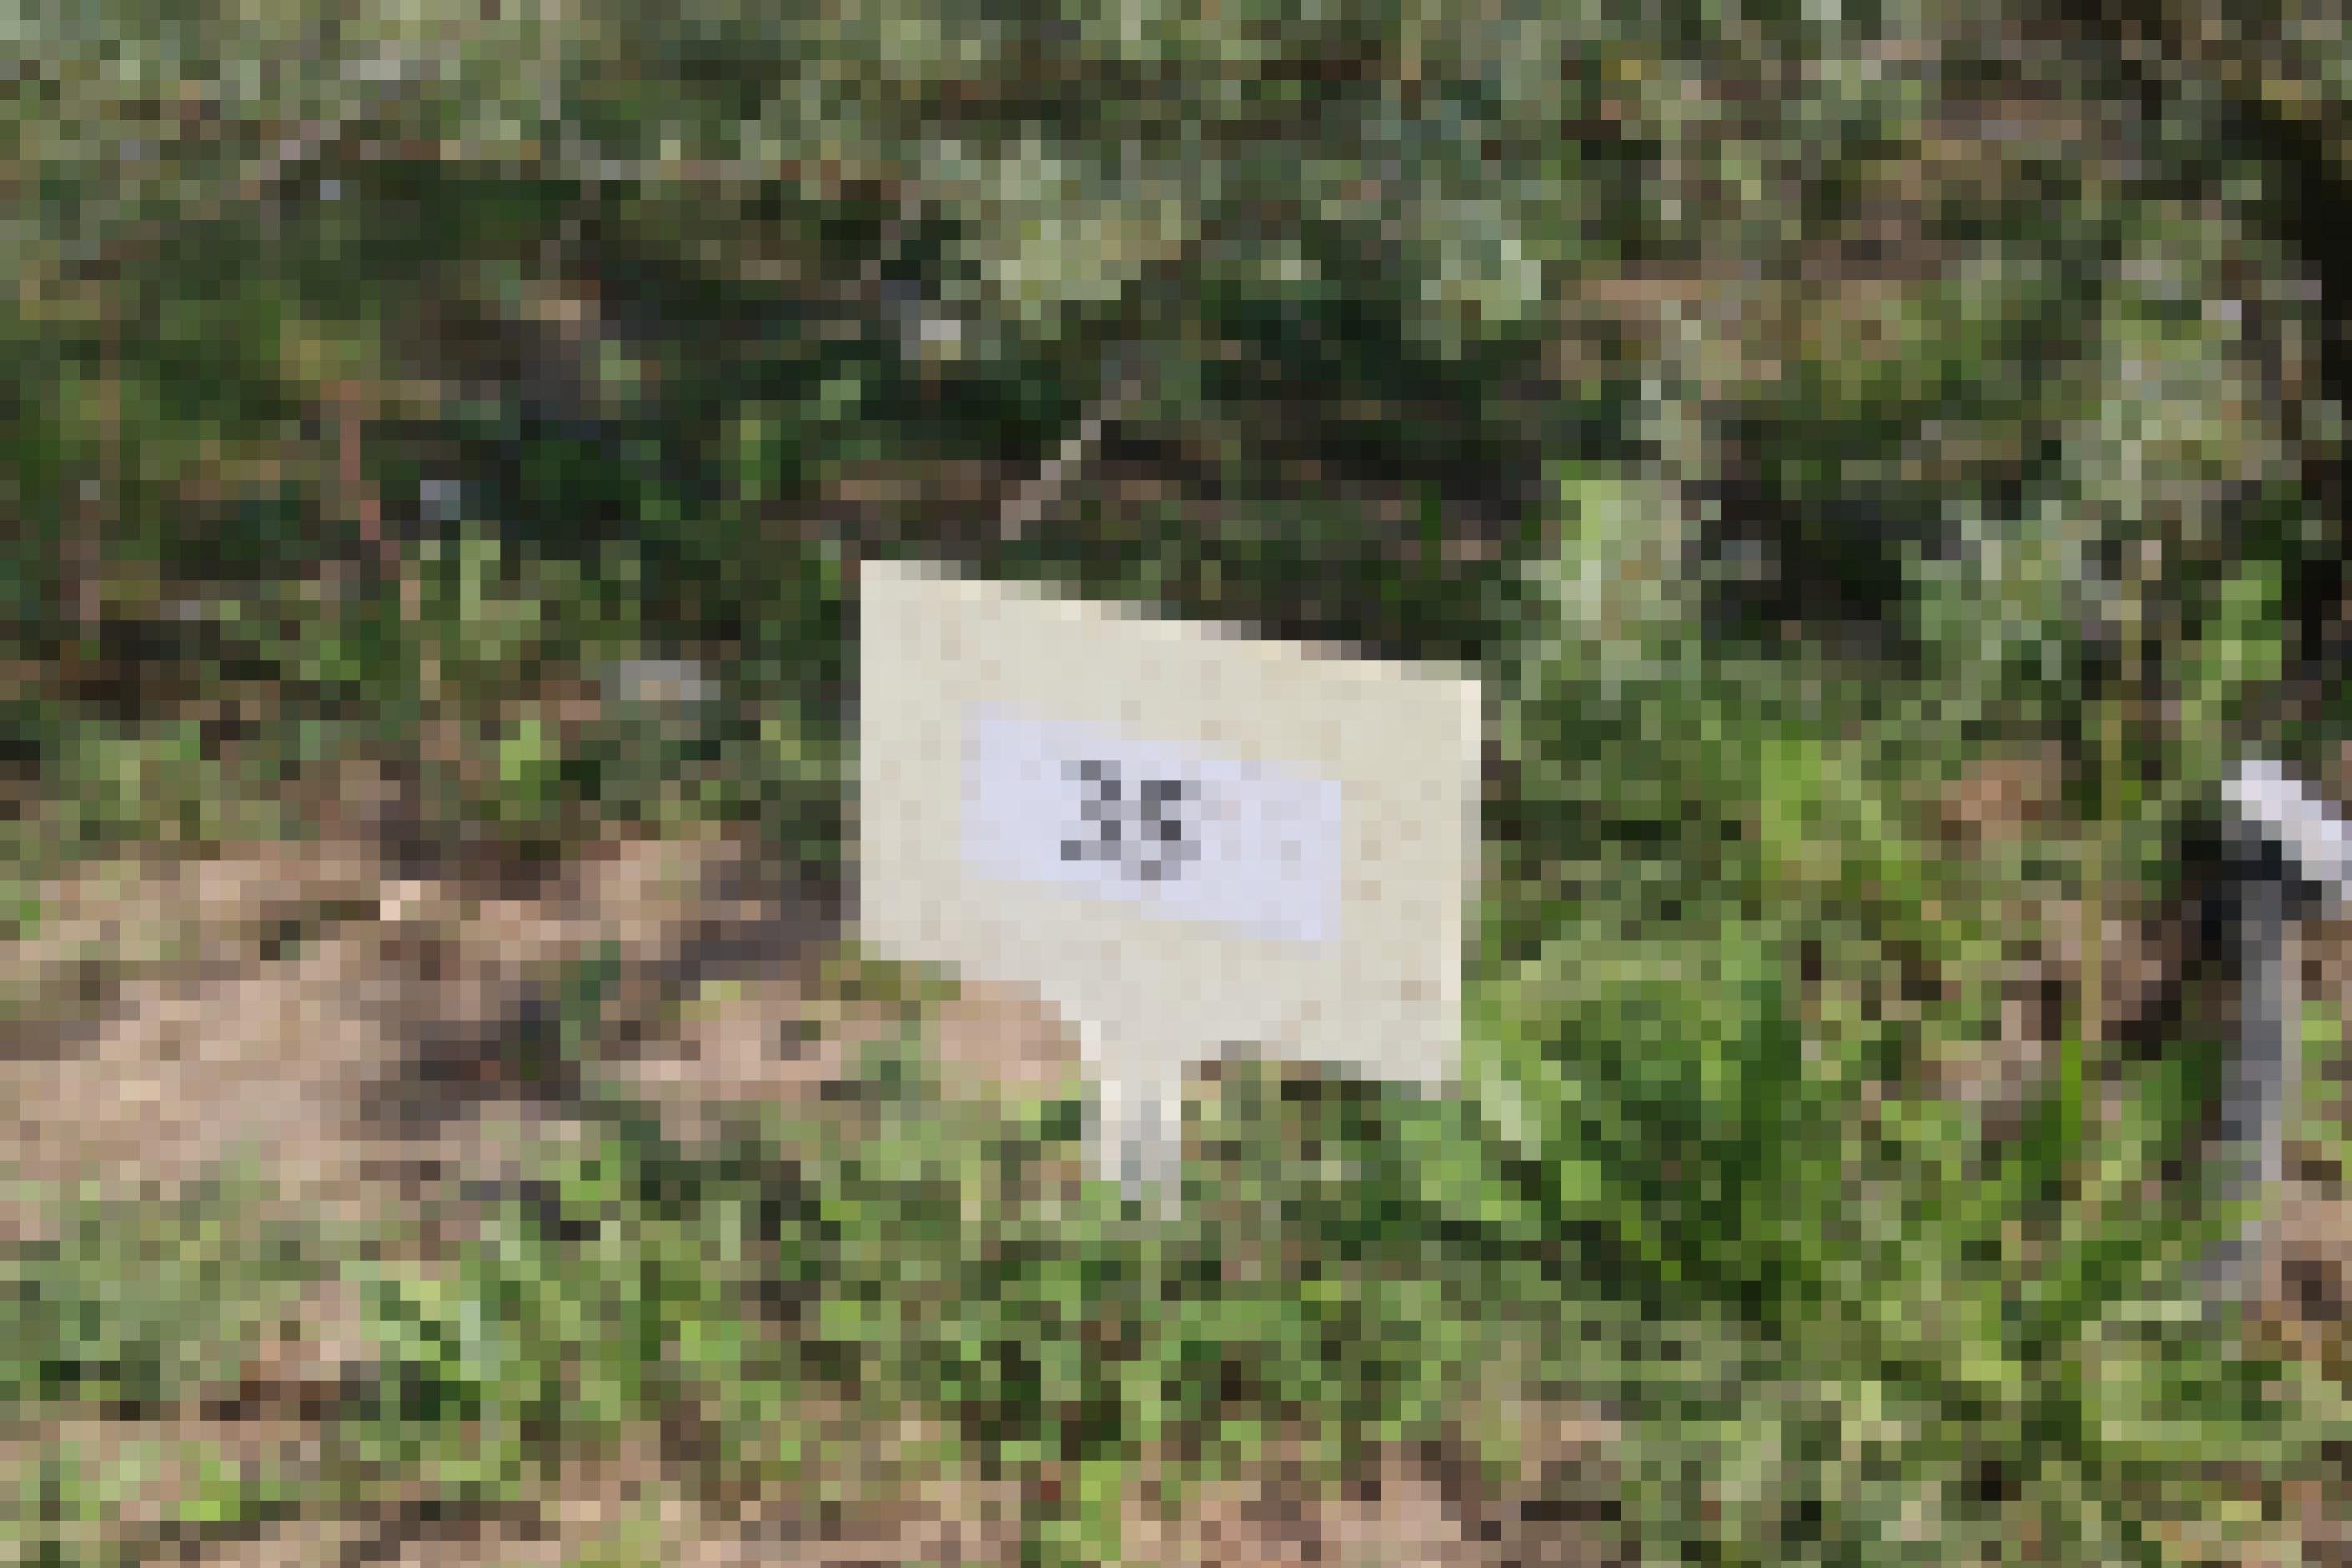 Ein Plastikschild mit der Nummer 35 steckt im Boden